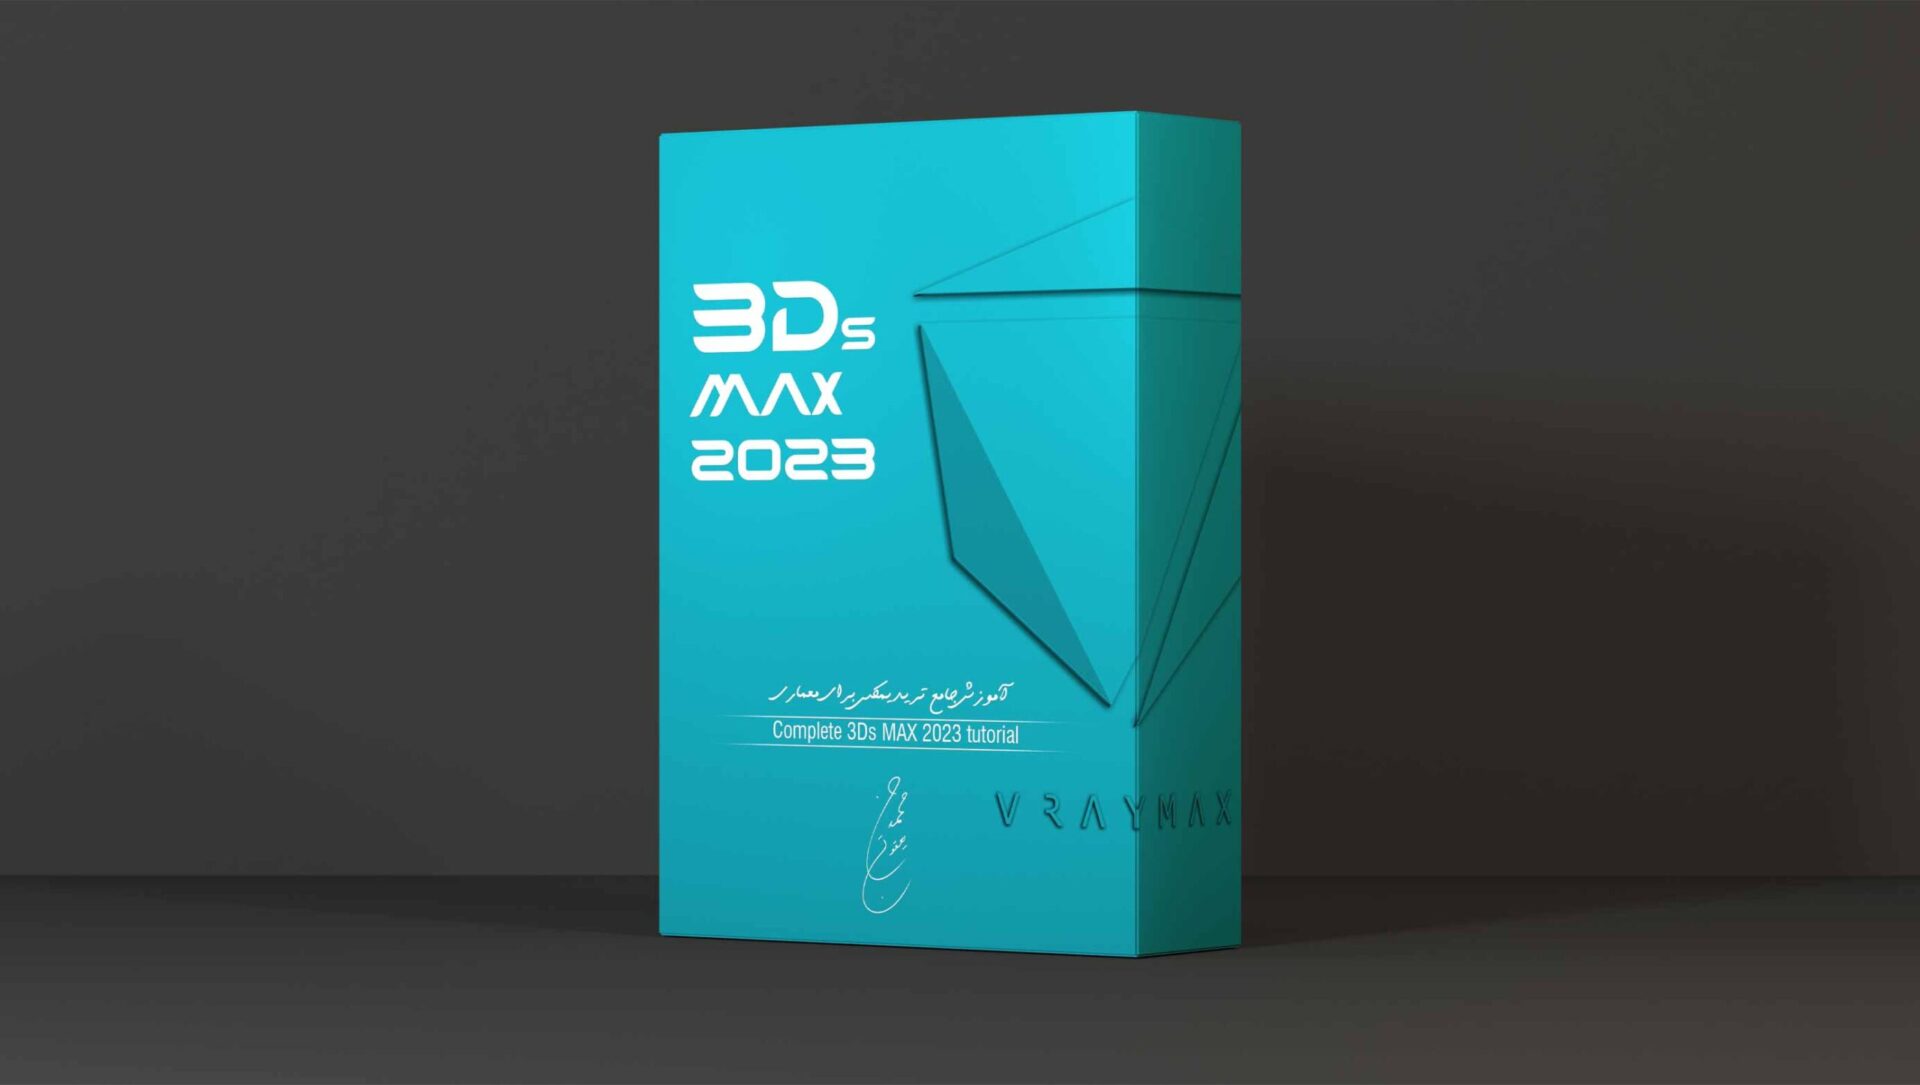 3Ds MAX 2023